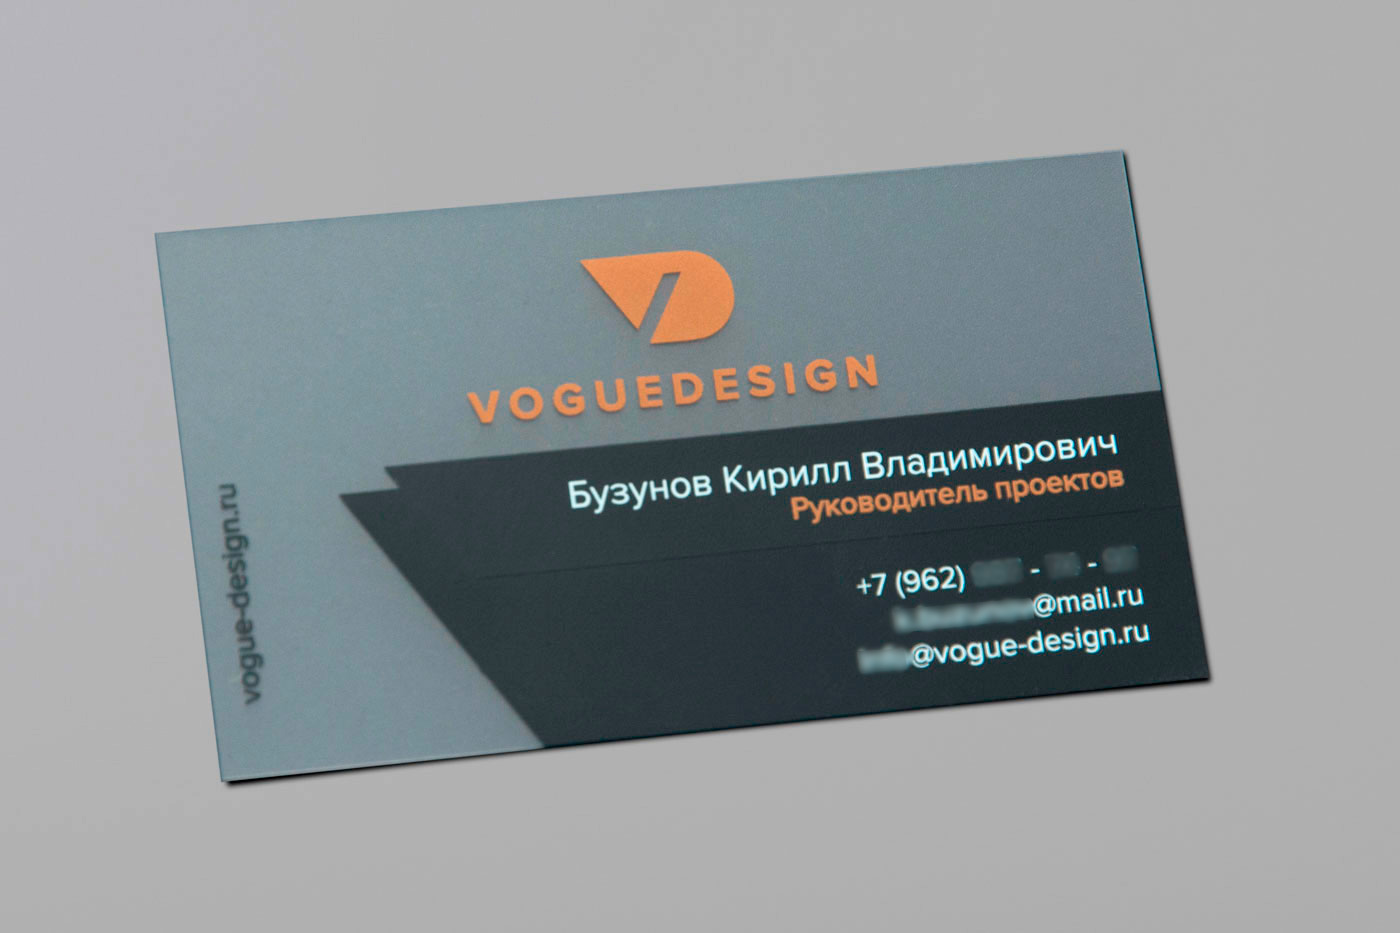 Визитная карточка руководителя проектов Voguedesign